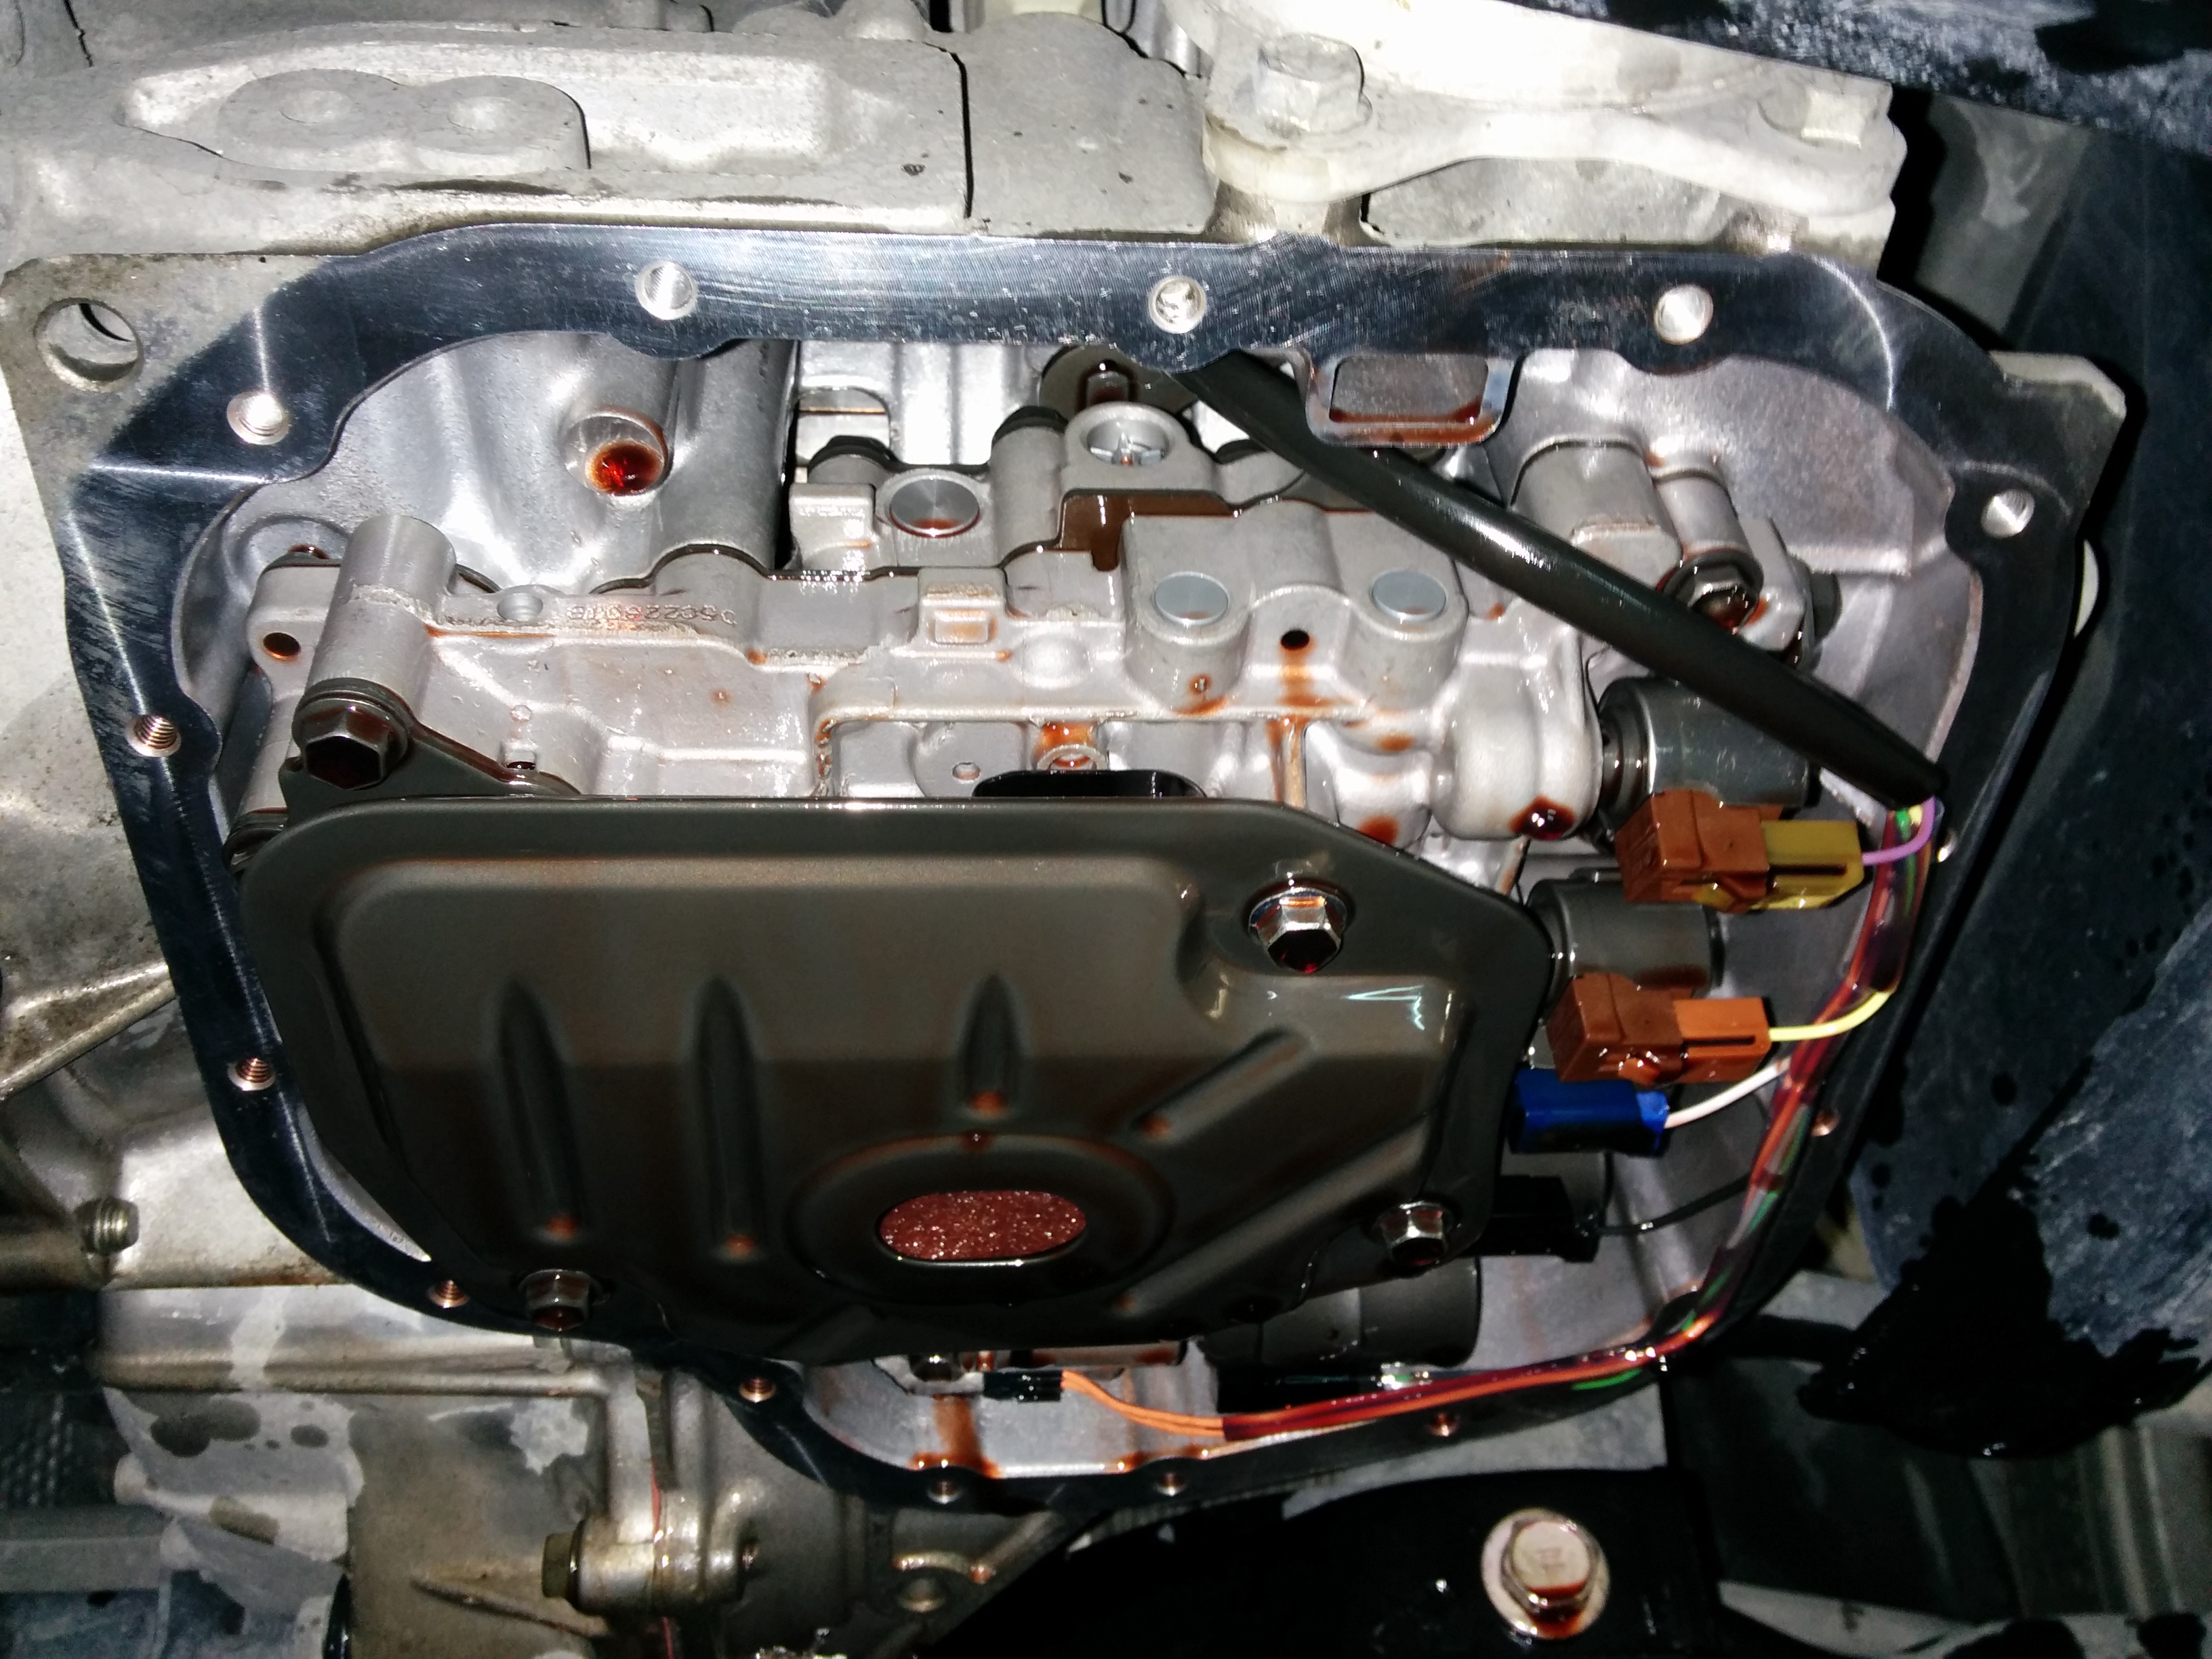 Тойота виш залить масло. Тойота Виш вариатор. K410 фильтр. Замена масла в вариаторе чери м11. Замена масла трансмиссионного Toyota Vitz (2009.